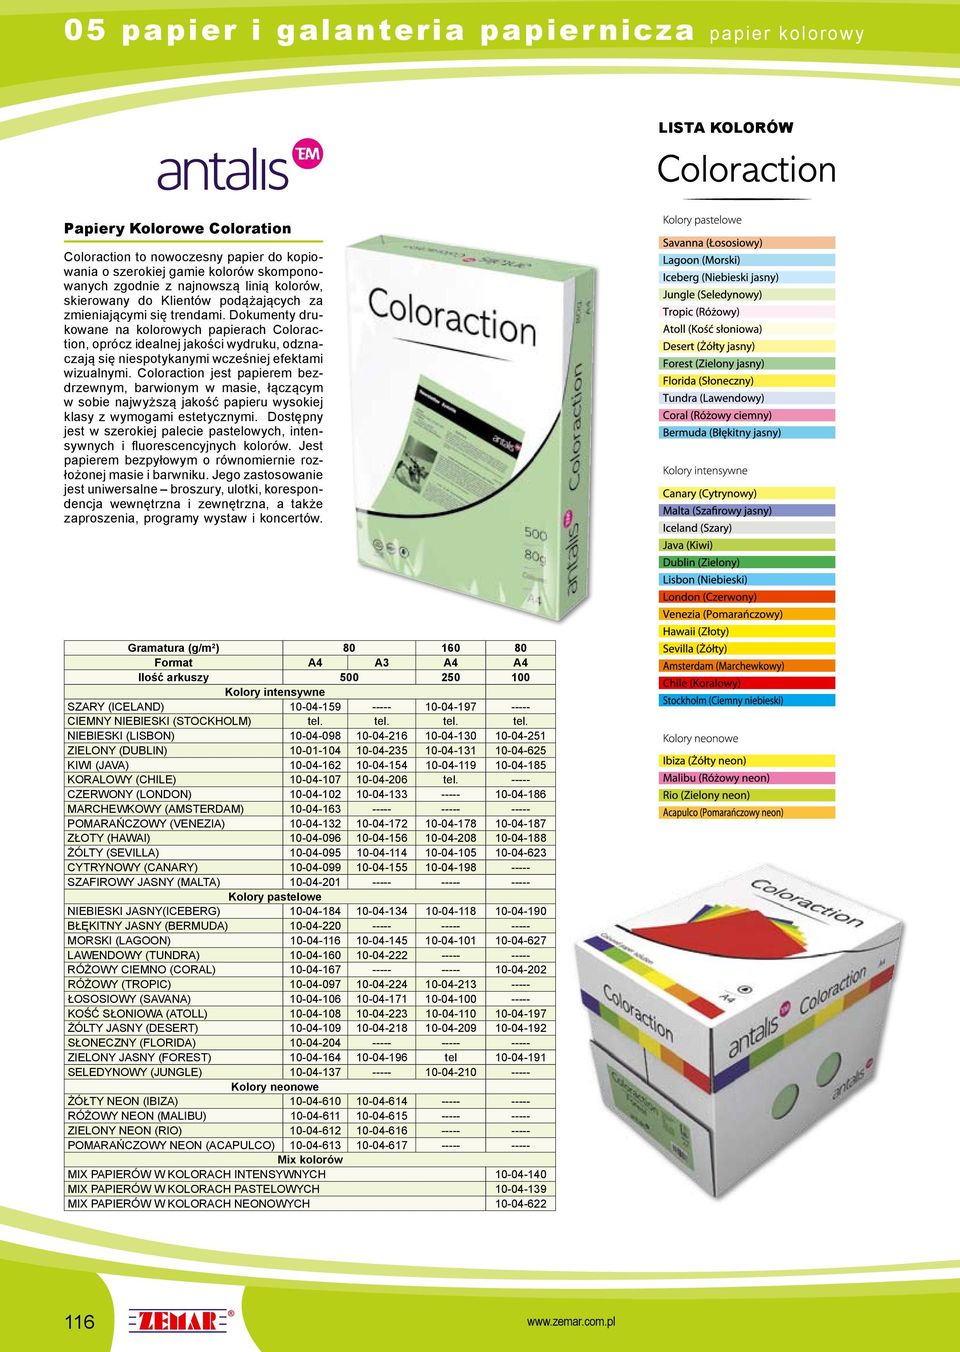 Dokumenty drukowane na kolorowych papierach Coloraction, oprócz idealnej jakości wydruku, odznaczają się niespotykanymi wcześniej efektami wizualnymi.